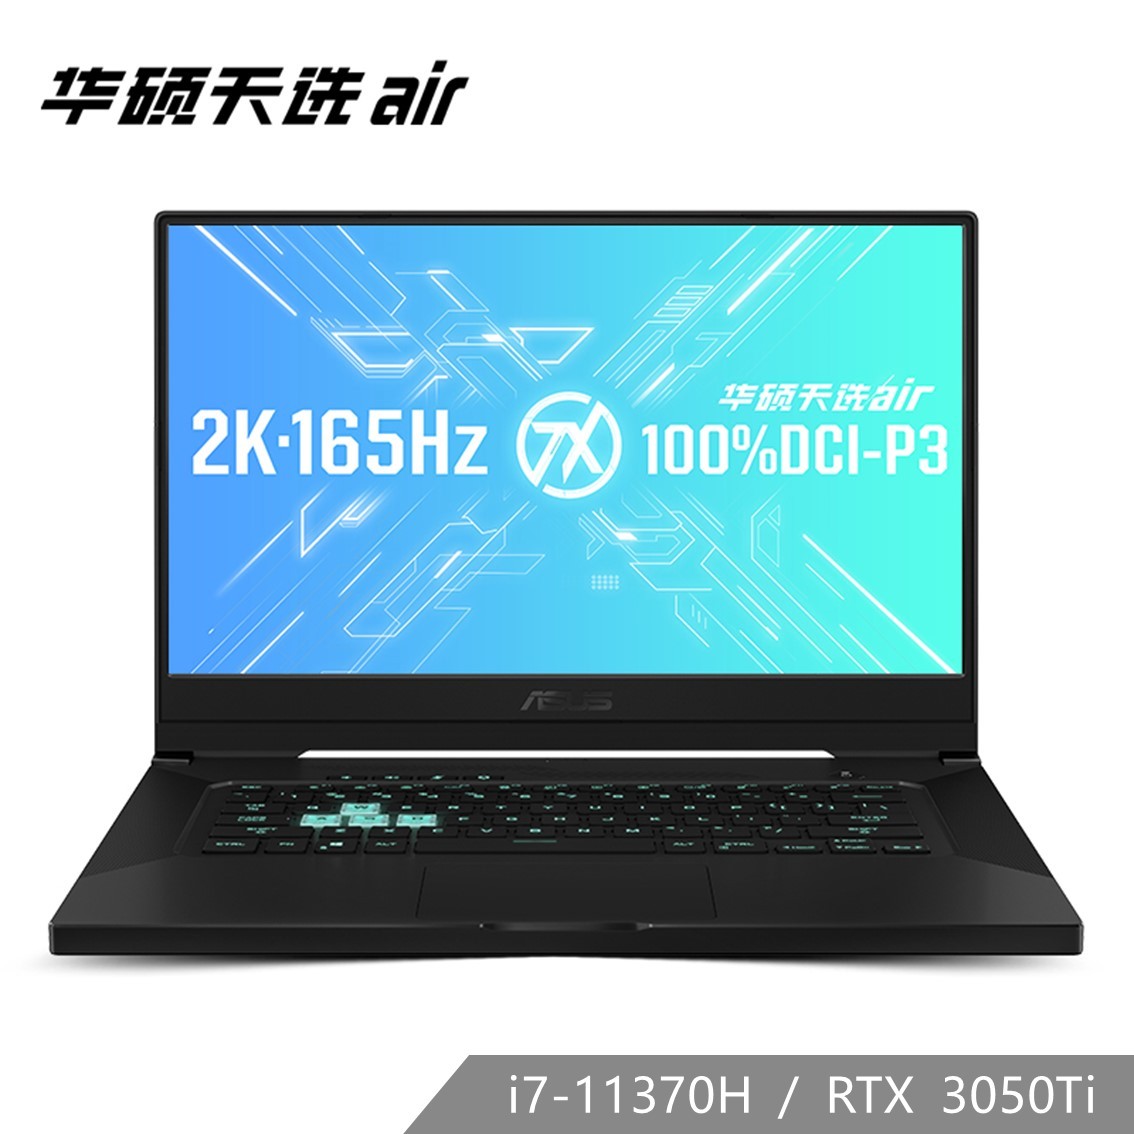 天选air 月曜白 11代i7 RTX3050Ti 165Hz 2K全能本笔记本电脑-15.6英寸（Win10/i7-11370H/16G/512 SSD/RTX3050Ti/100%sDCI-P3）